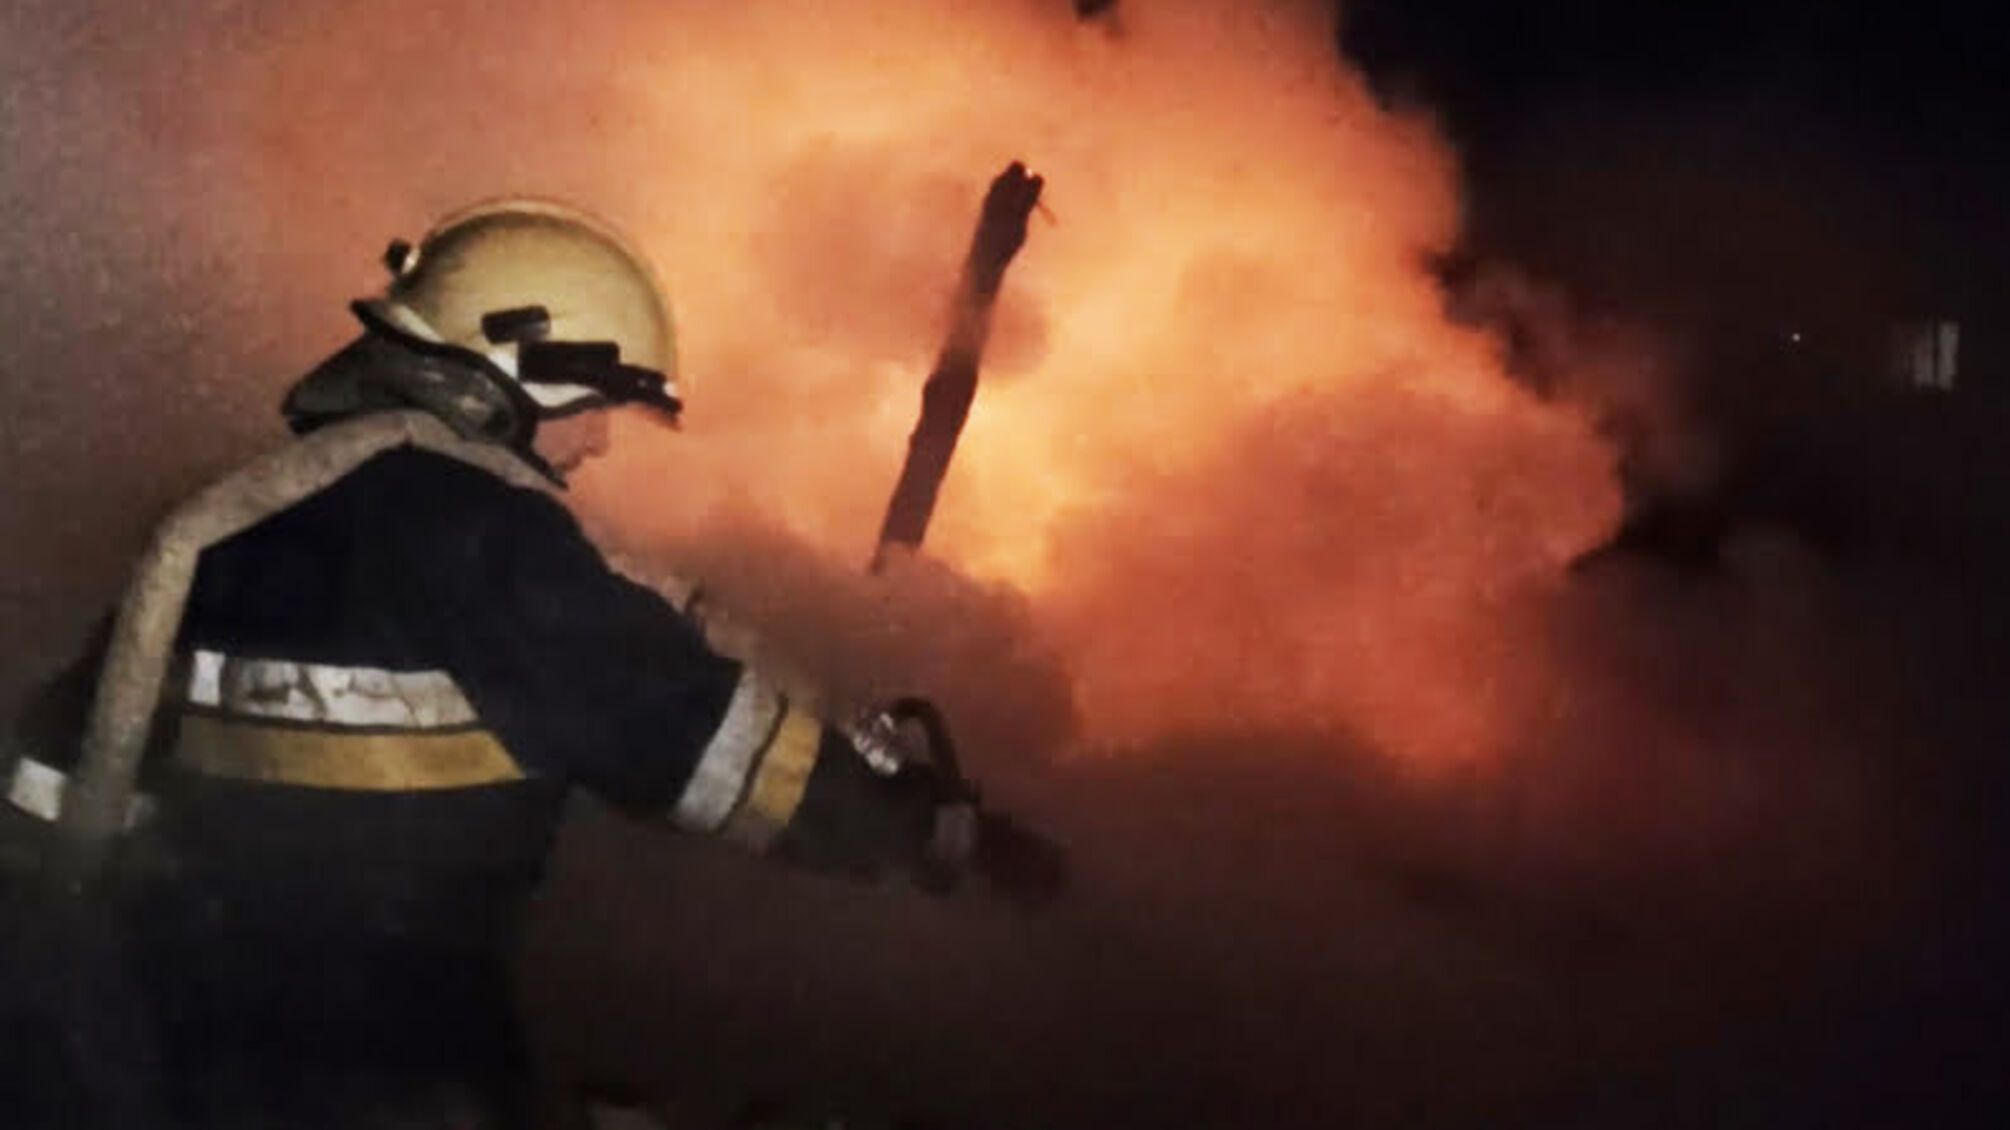 Хмельницька область: рятувальники ліквідували пожежу приватного сінника, не допустивши перекидання вогню на поруч розташований житловий будинок